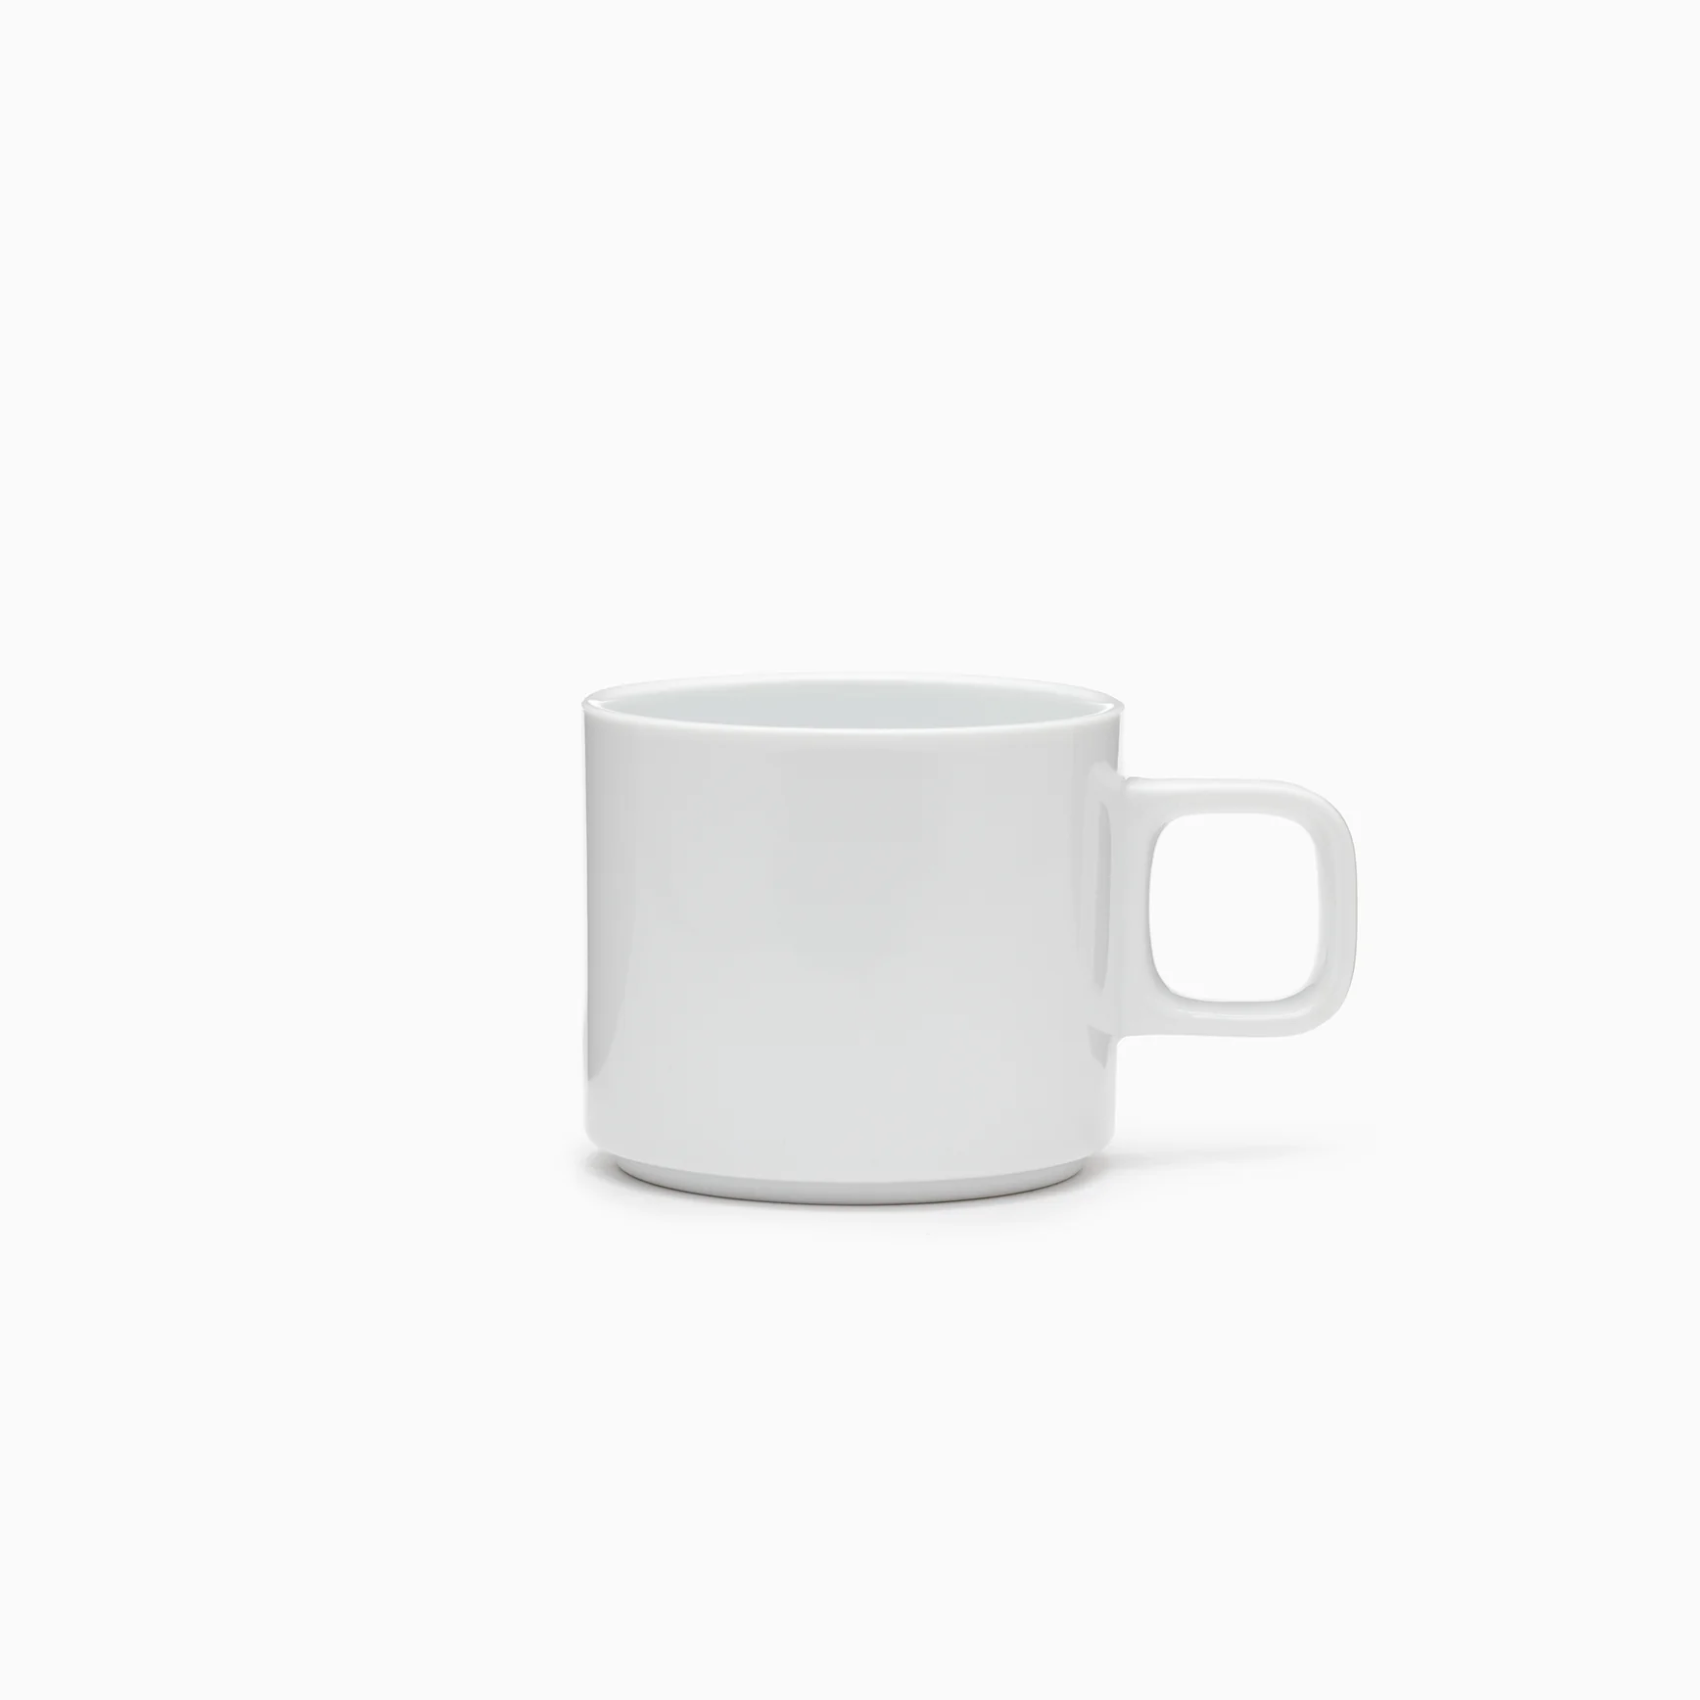 Hasami Porcelain Mug, White